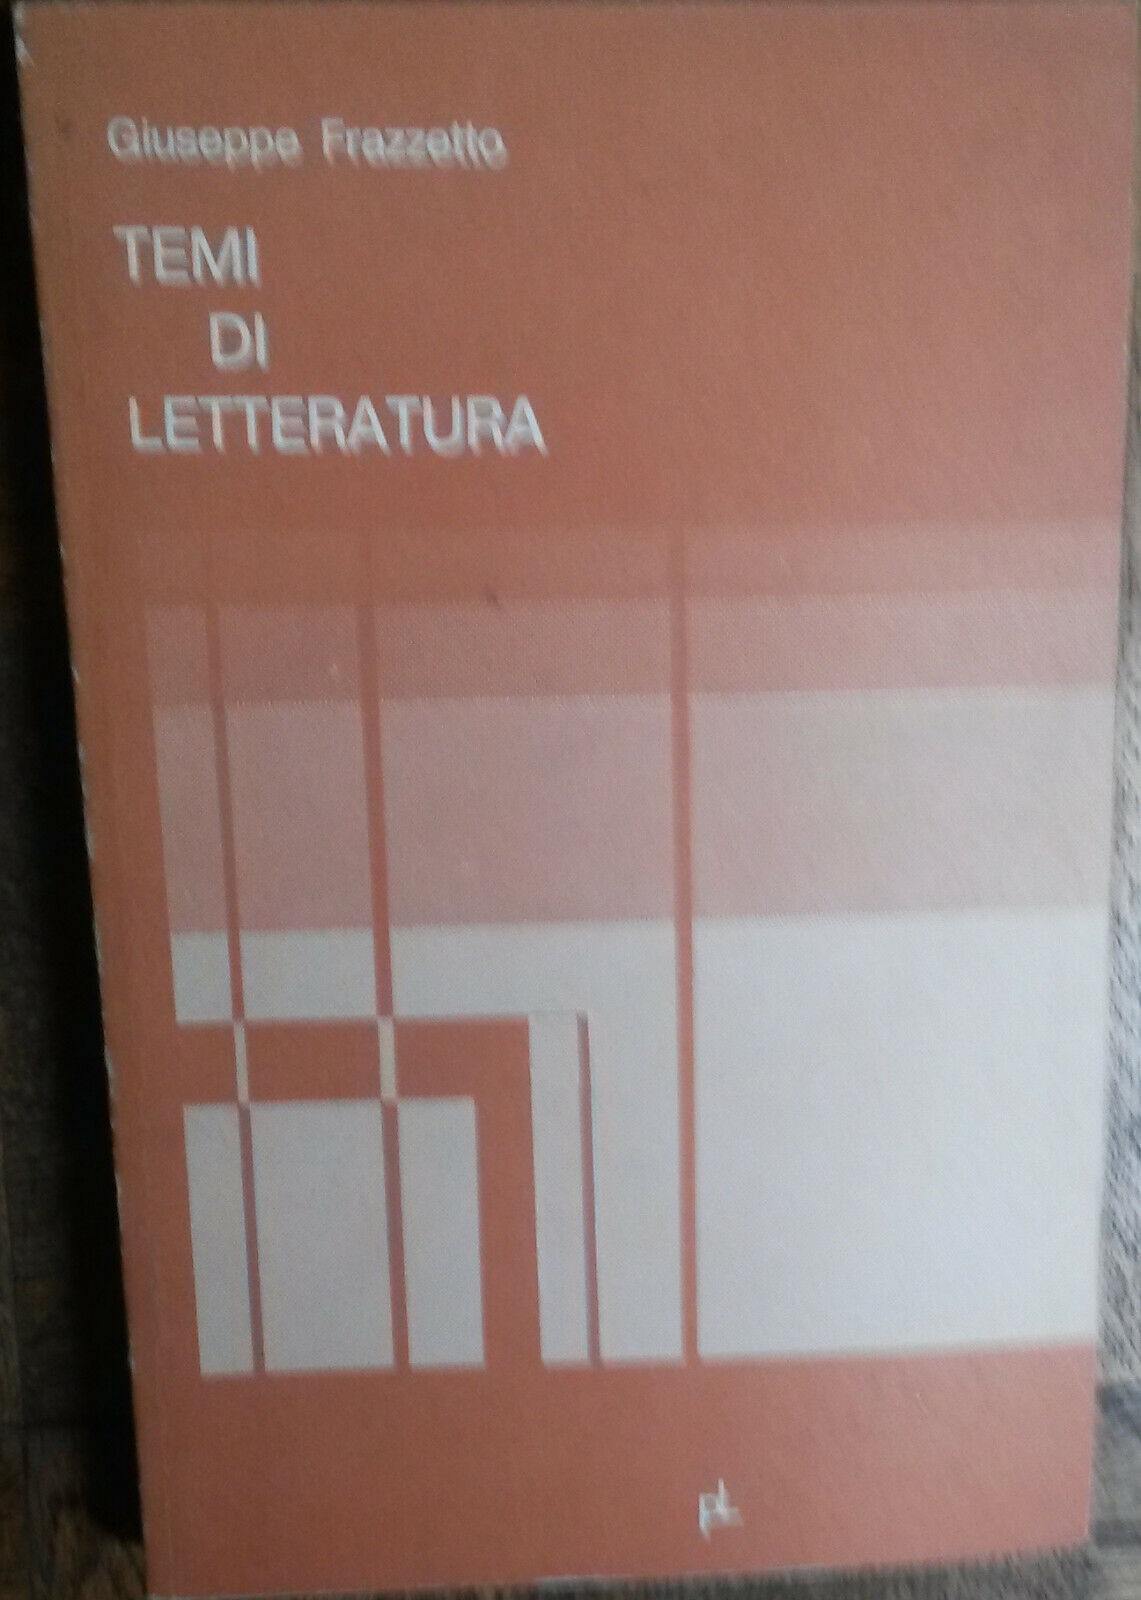 Temi di letteratura - Giuseppe Frazzetto  - PL,1978 - R